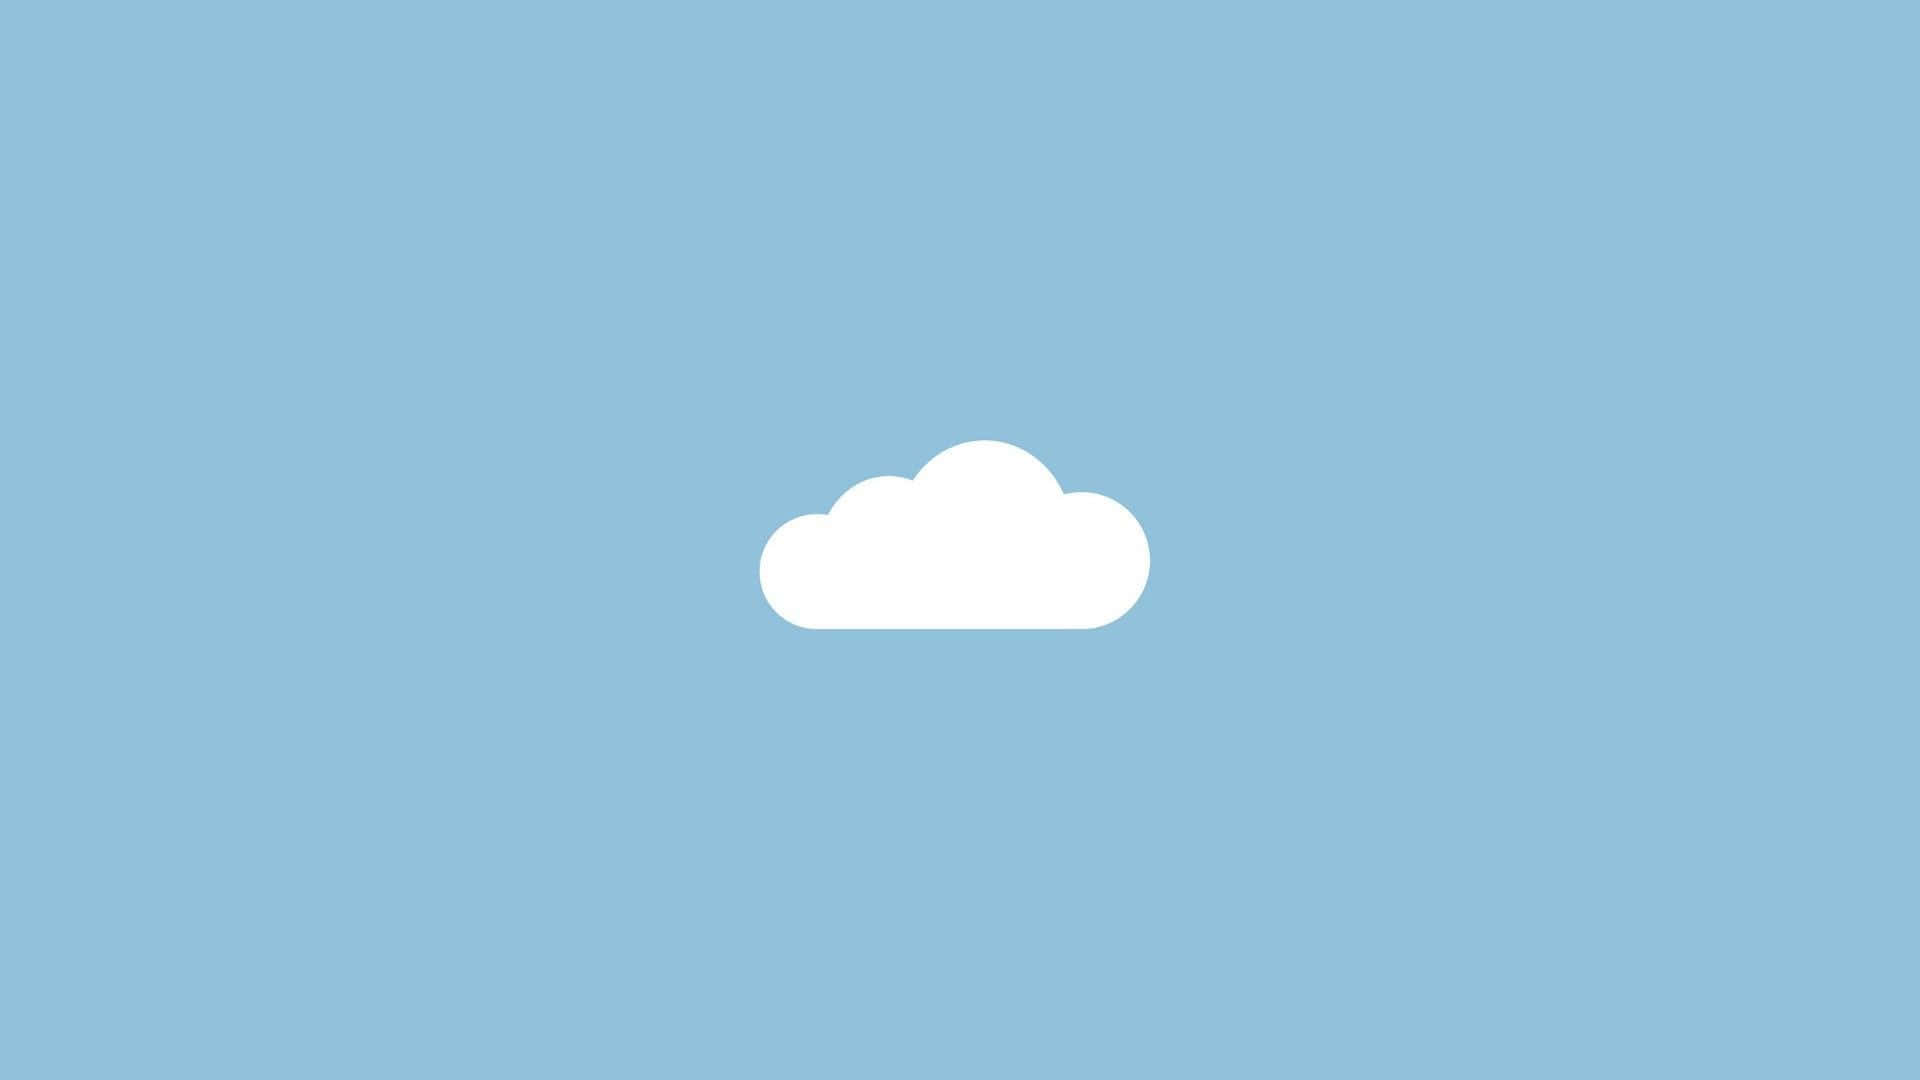 Pastel Blue Cotton Cloud Aesthetic Desktop Wallpaper